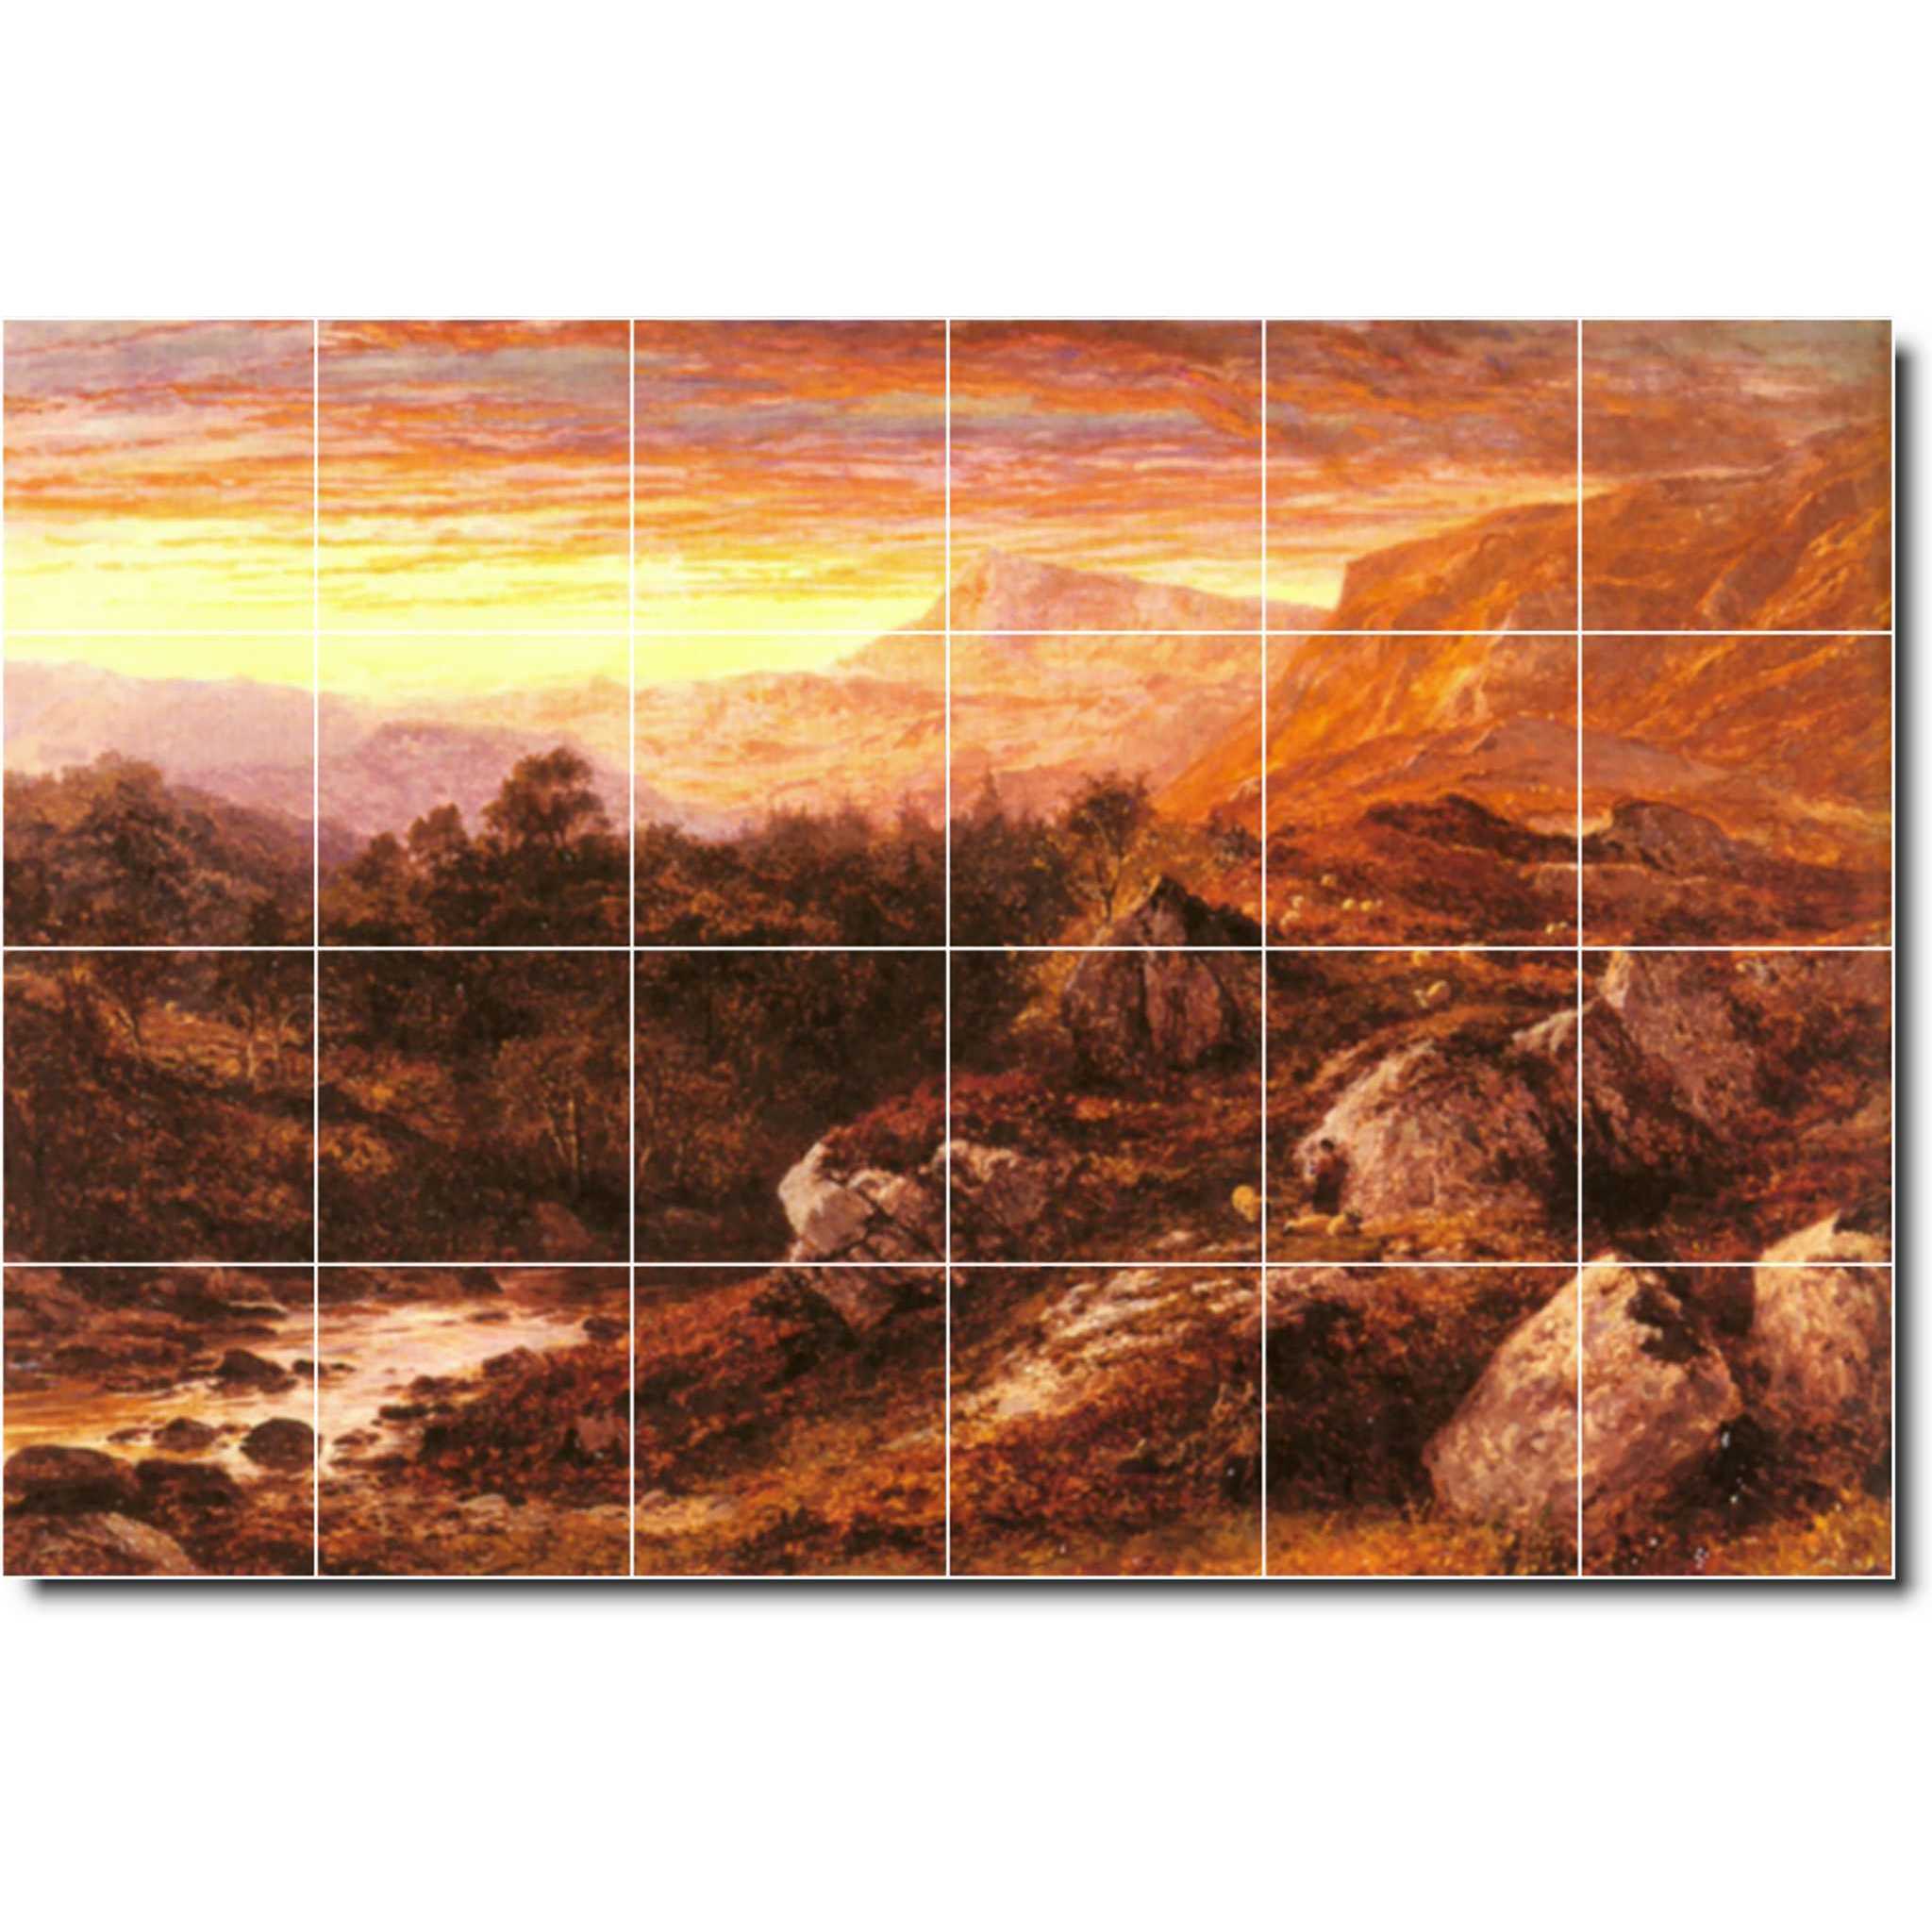 benjamin leader landscape painting ceramic tile mural p05263